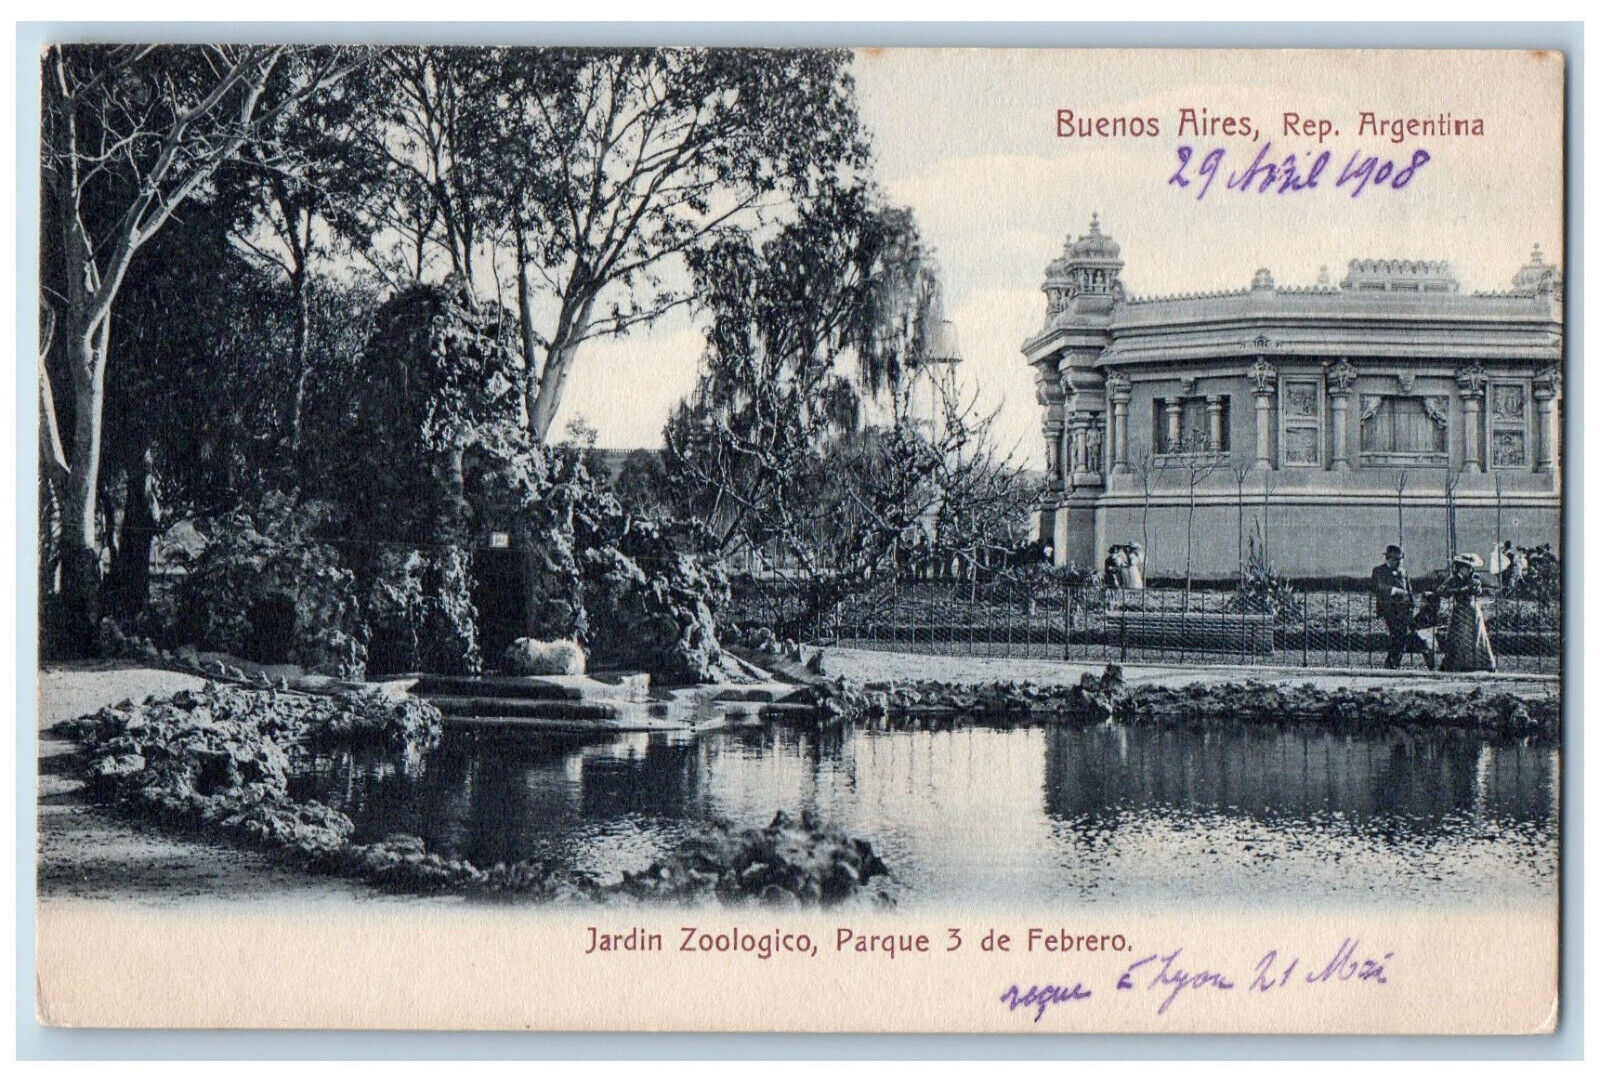 Buenos Aires Argentina Postcard 3 de Febrero Zoological Garden Park 1908 Antique